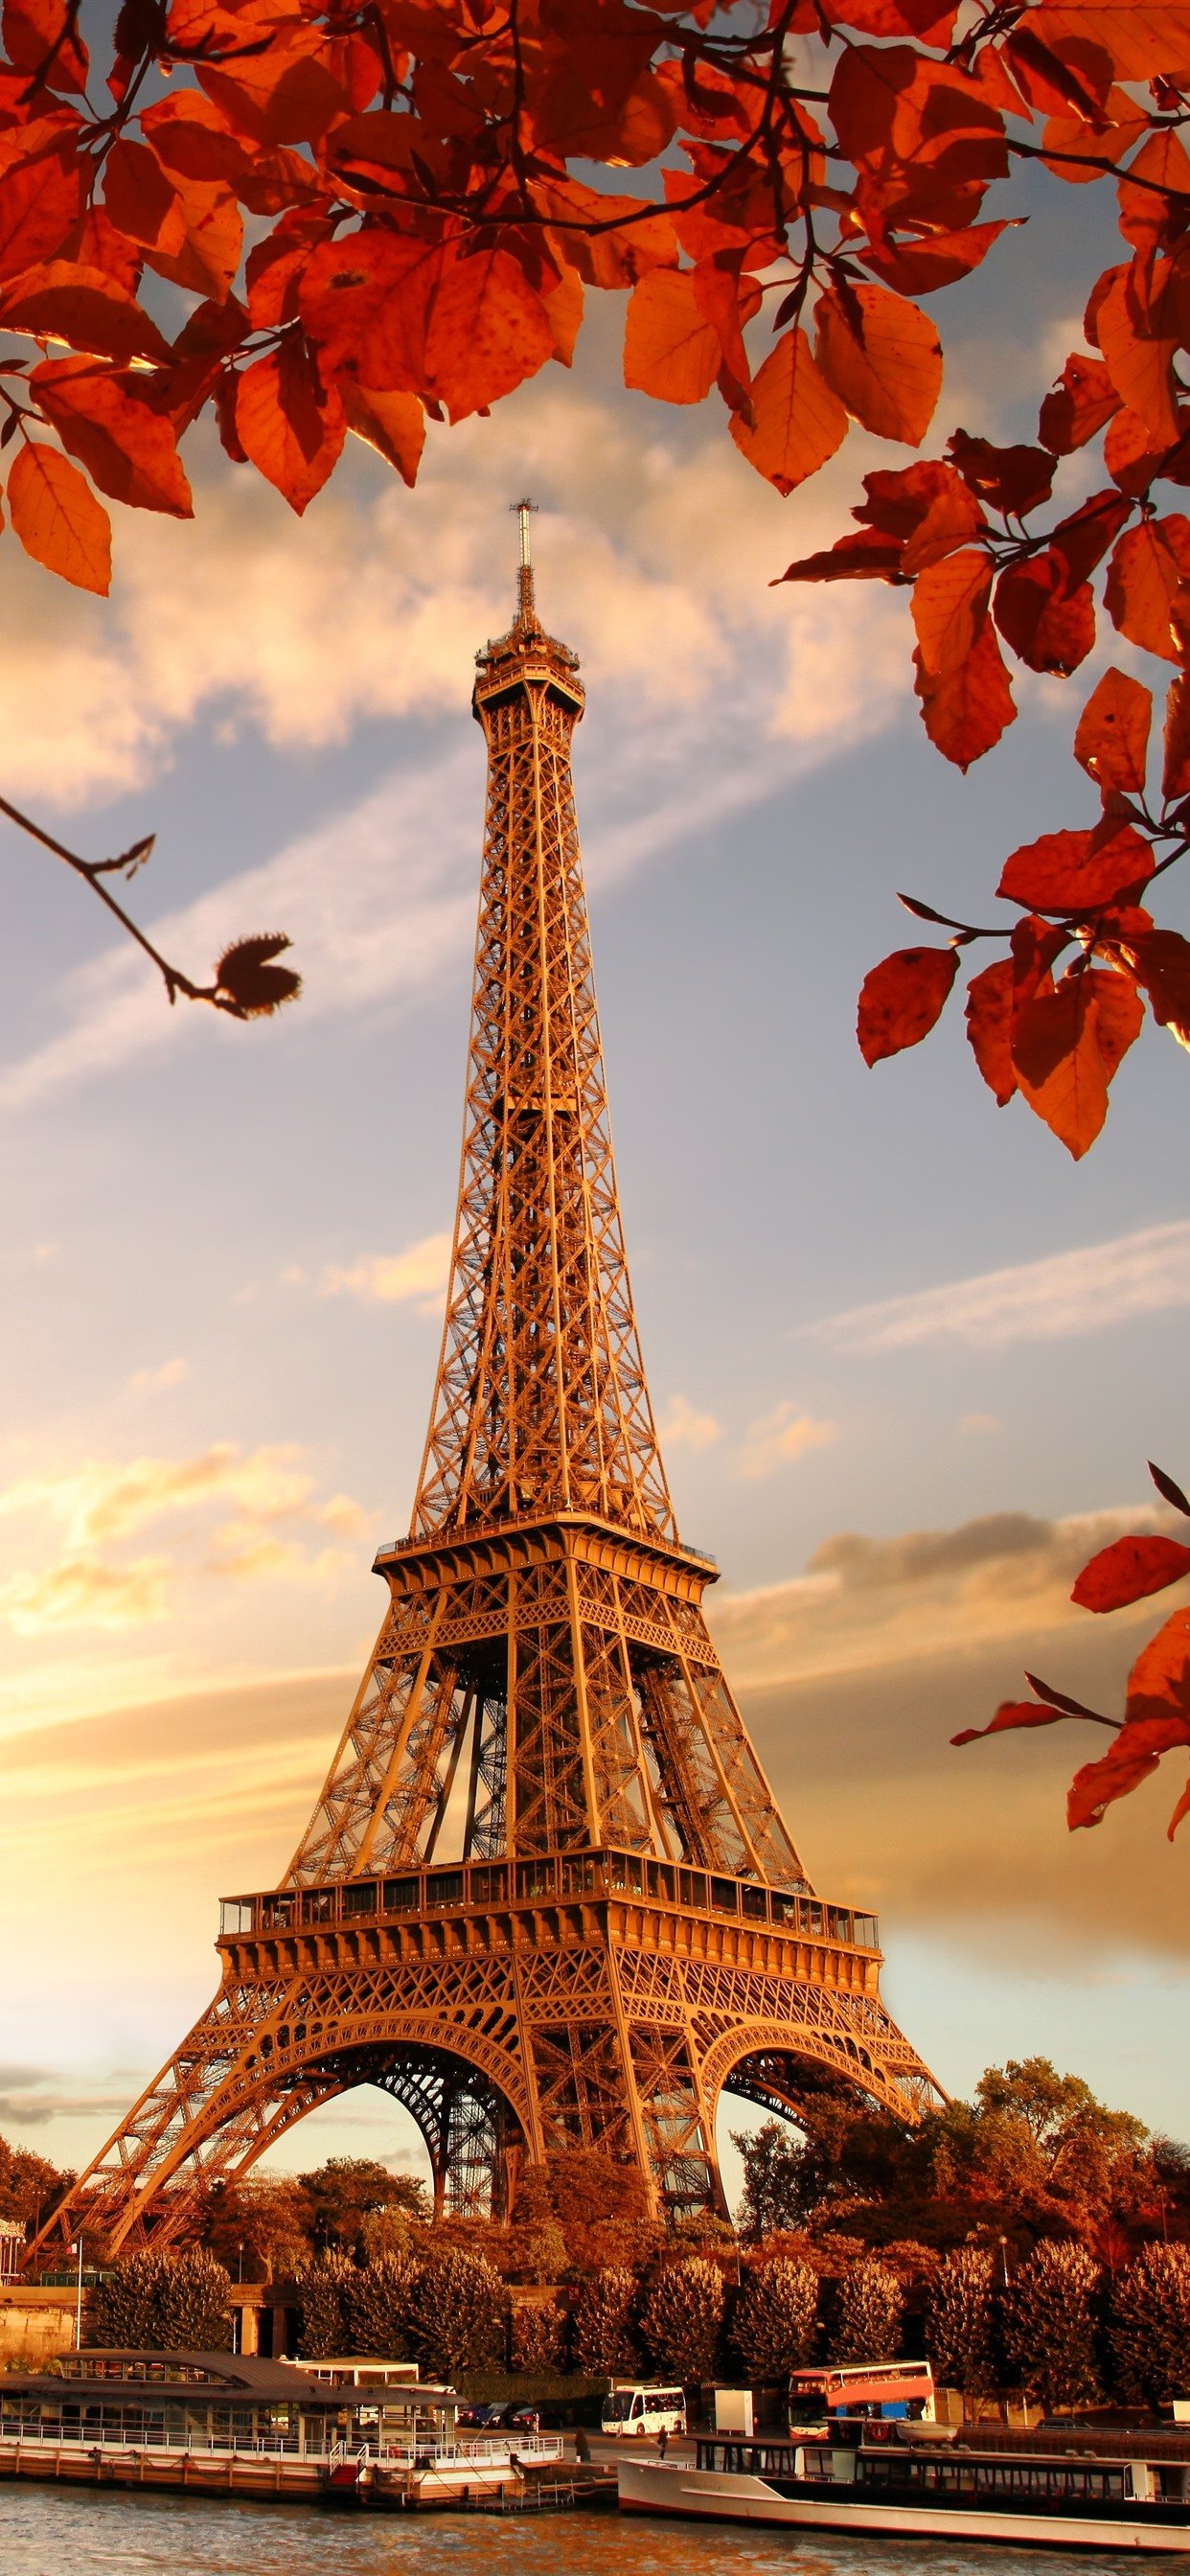 iPhone Xs Max Eiffel Tower Wallpaper